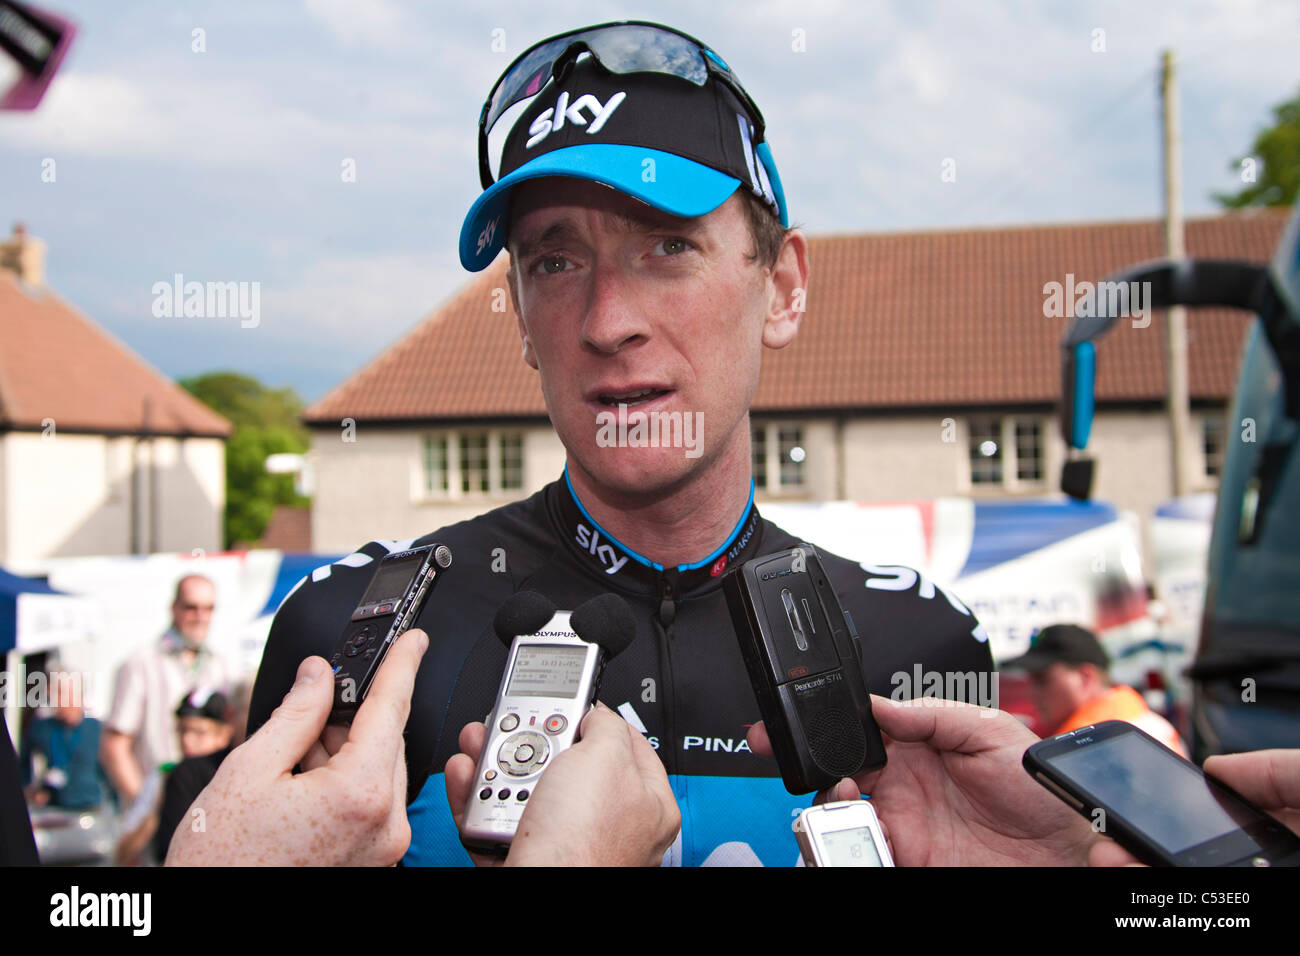 Bradley Wiggins intervistata dopo la vittoria del 2011 British National Road cycling championship Foto Stock